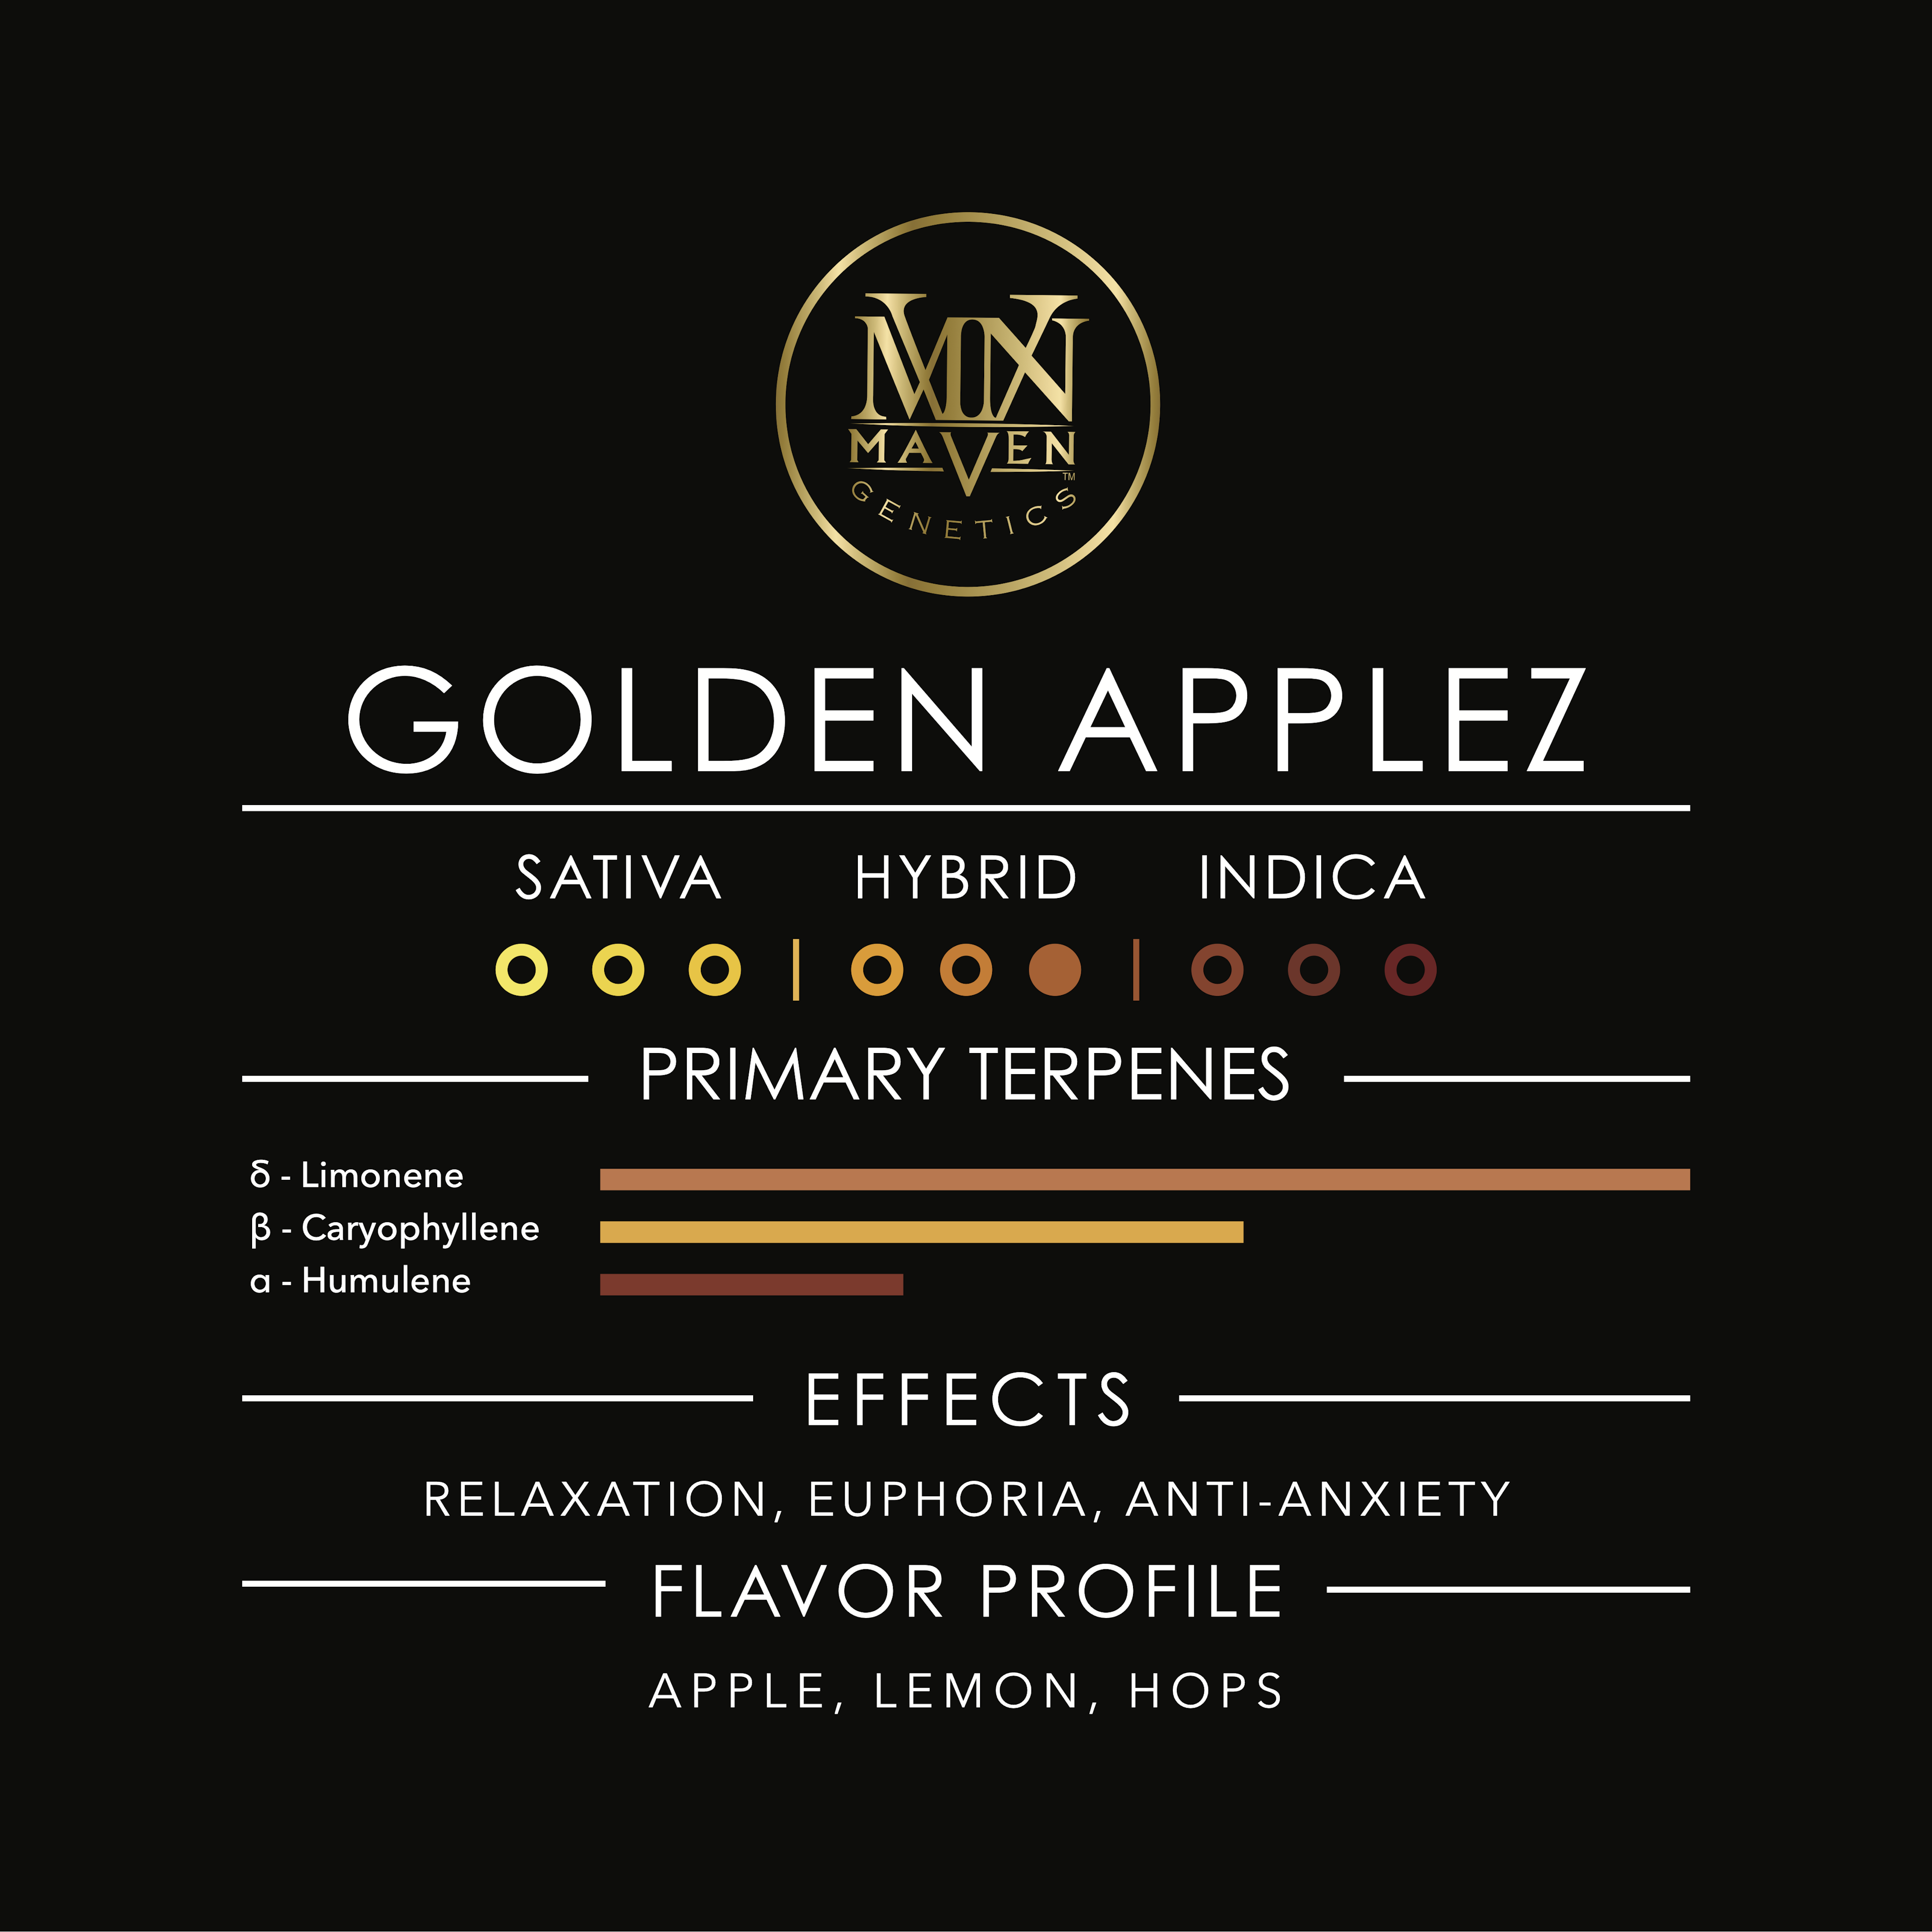 Golden Applez